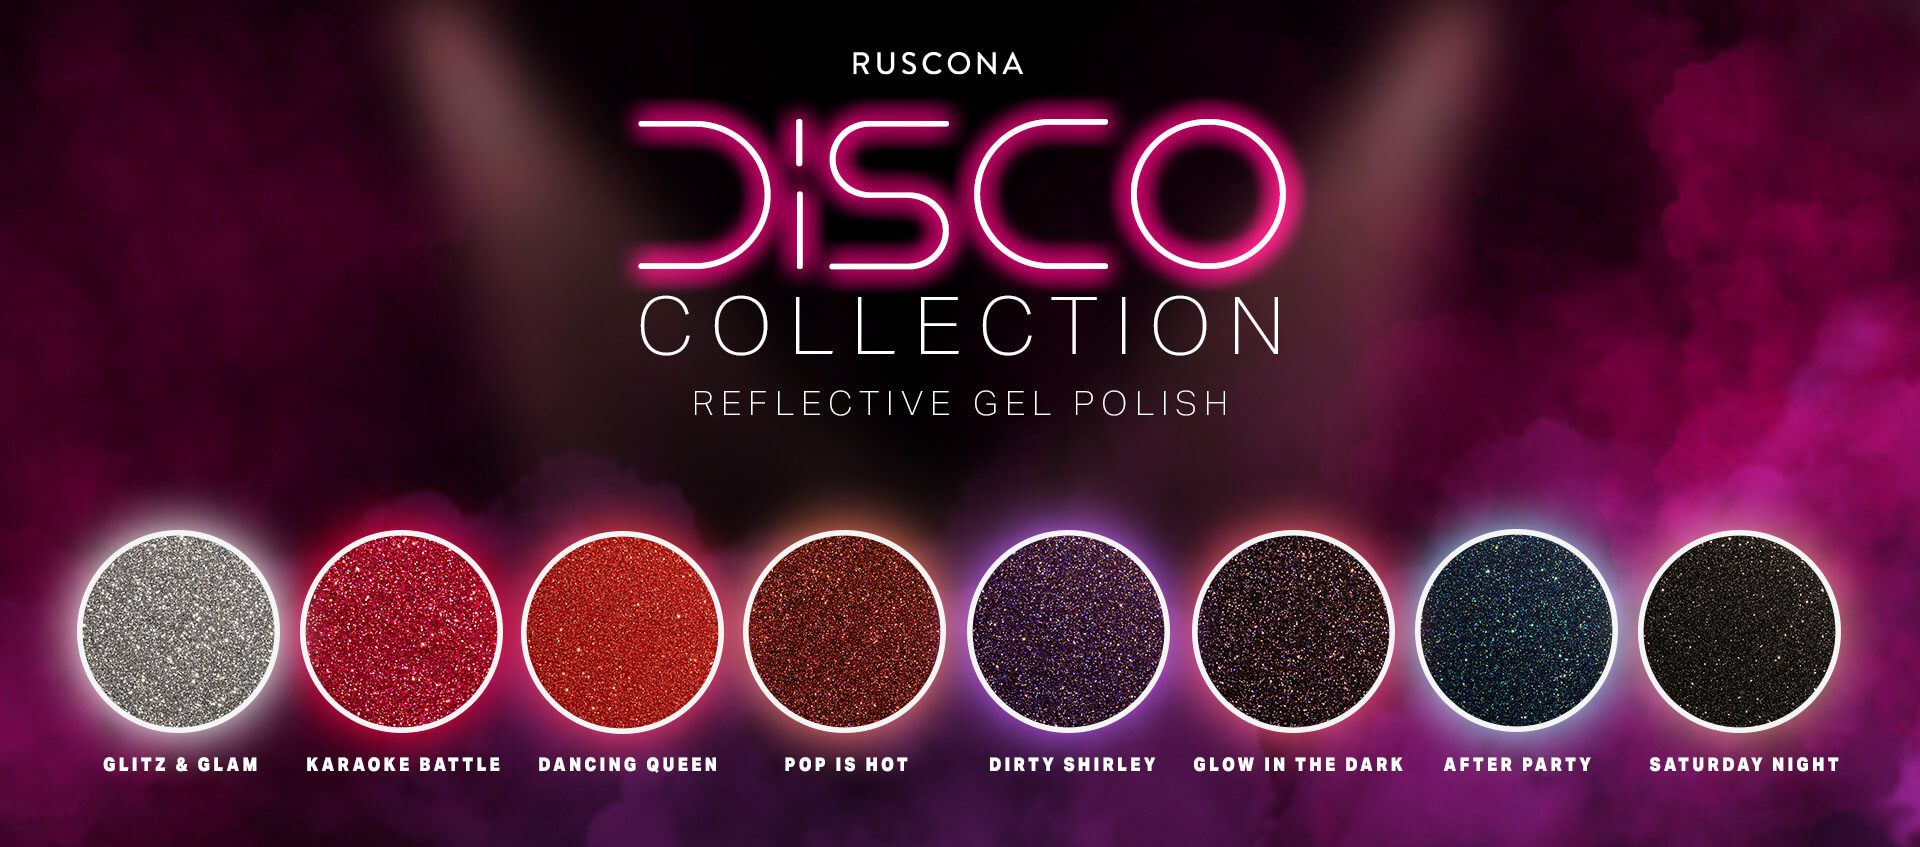 Ruscona disco collection